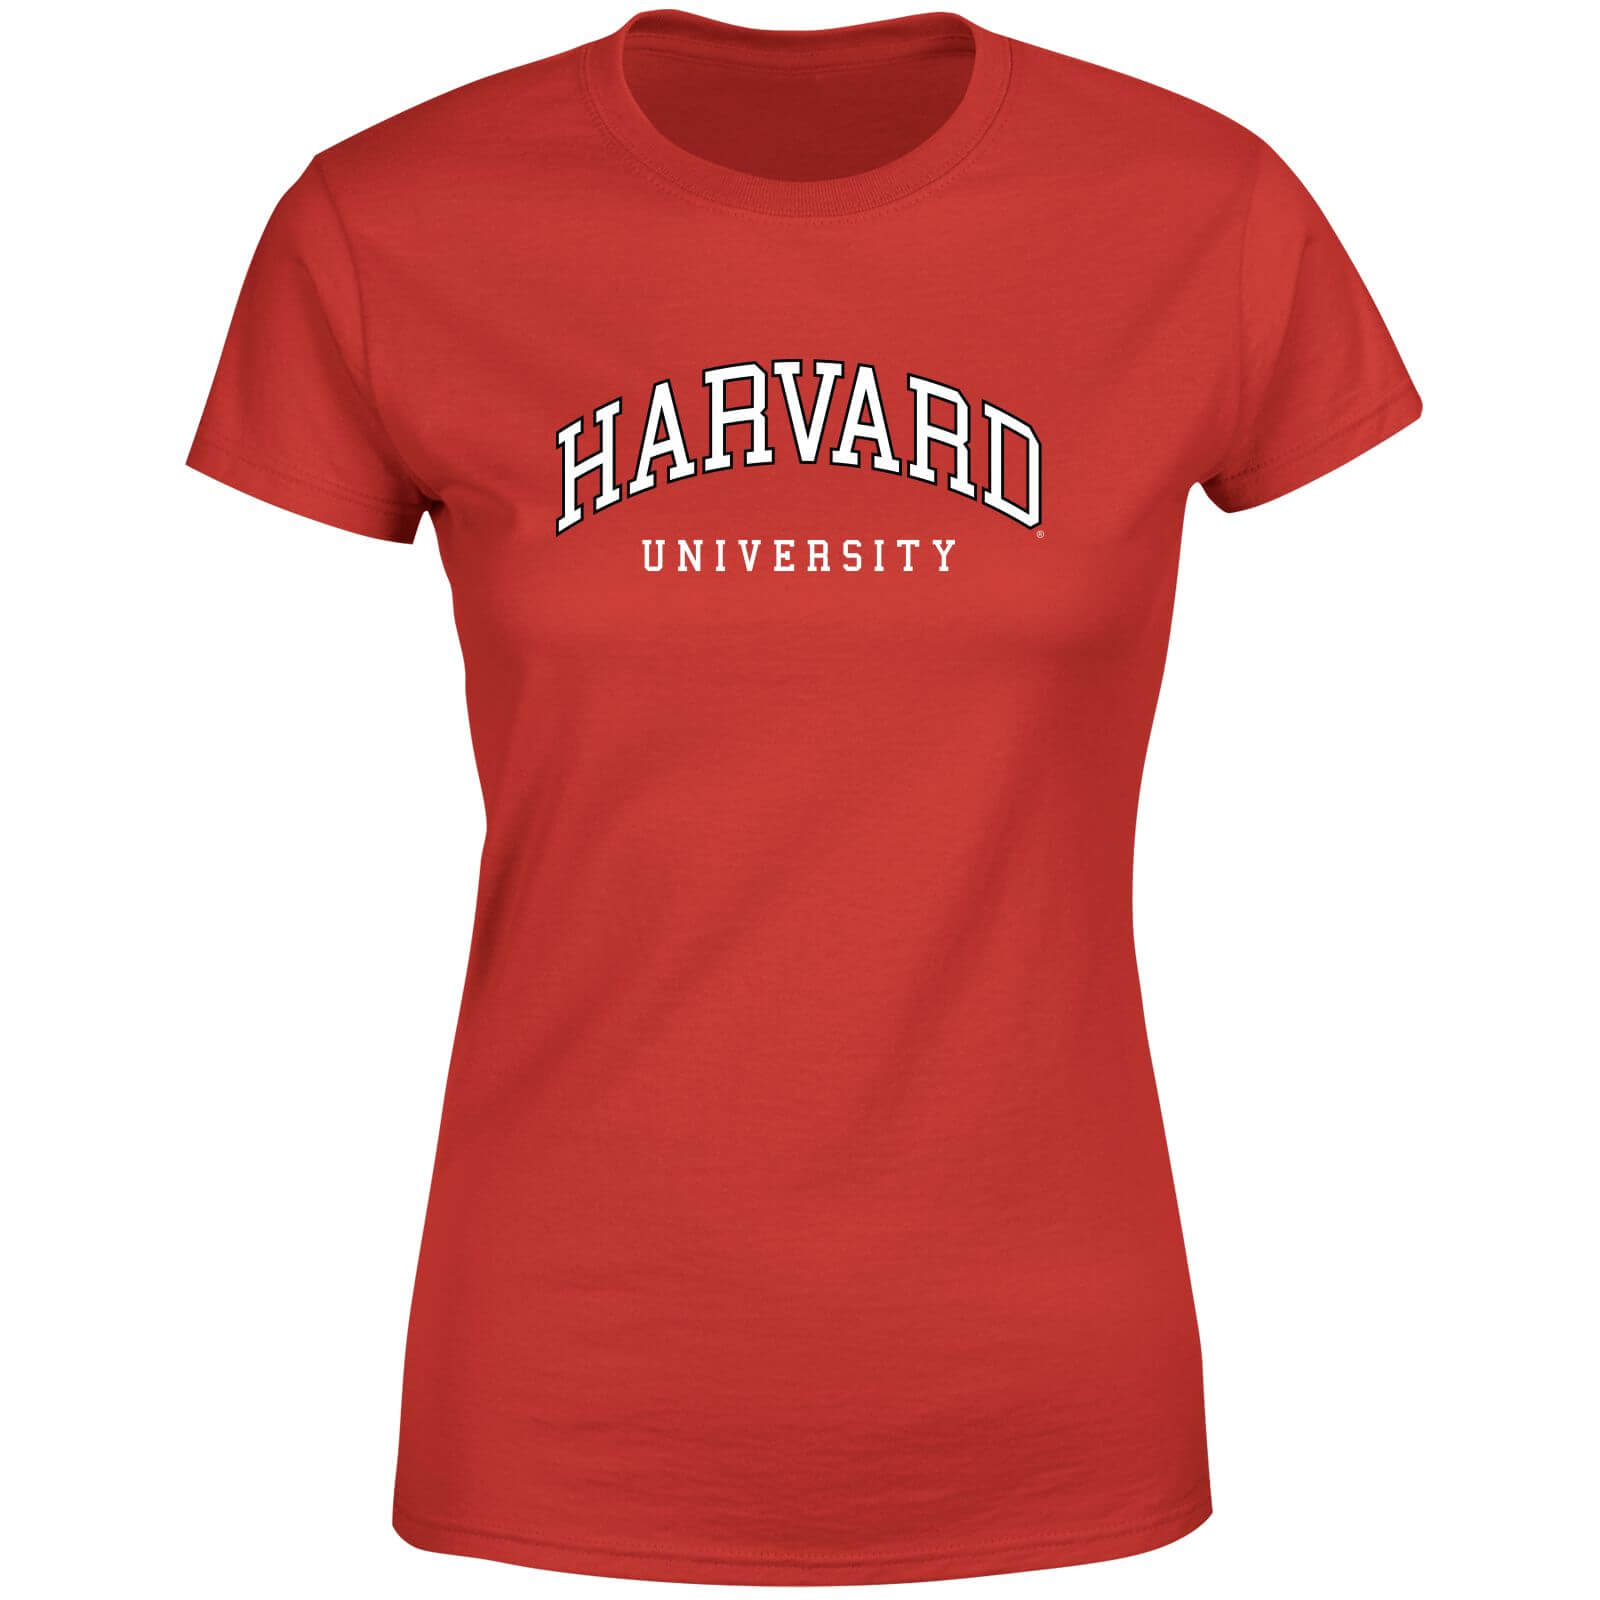 Harvard Red Tee Women's T-Shirt - Red - XS